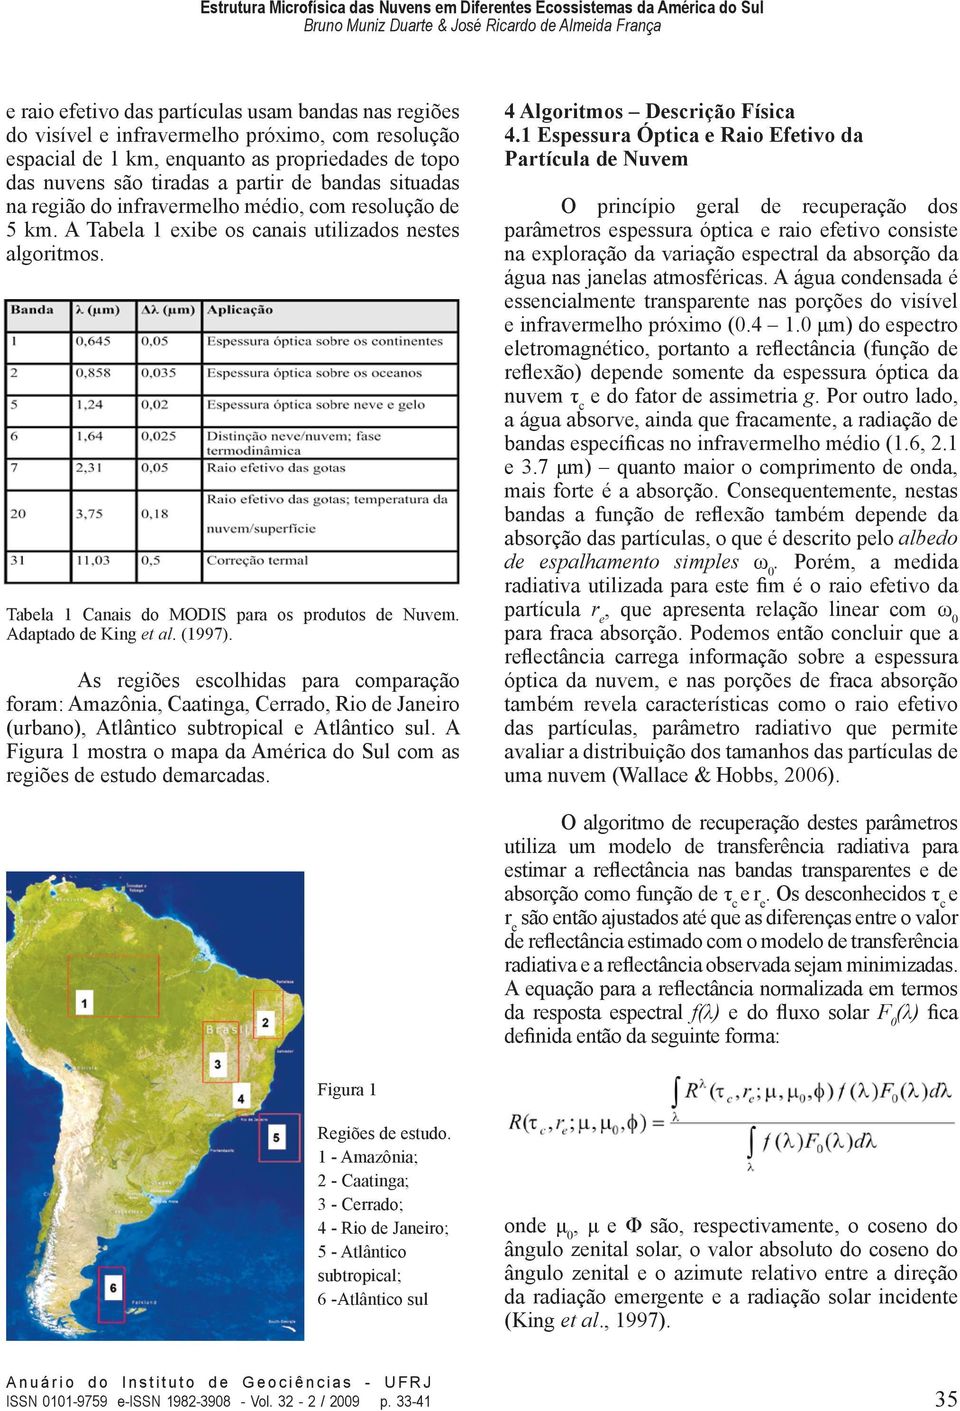 (1997). As regiões escolhidas para comparação foram: Amazônia, Caatinga, Cerrado, Rio de Janeiro (urbano), Atlântico subtropical e Atlântico sul.